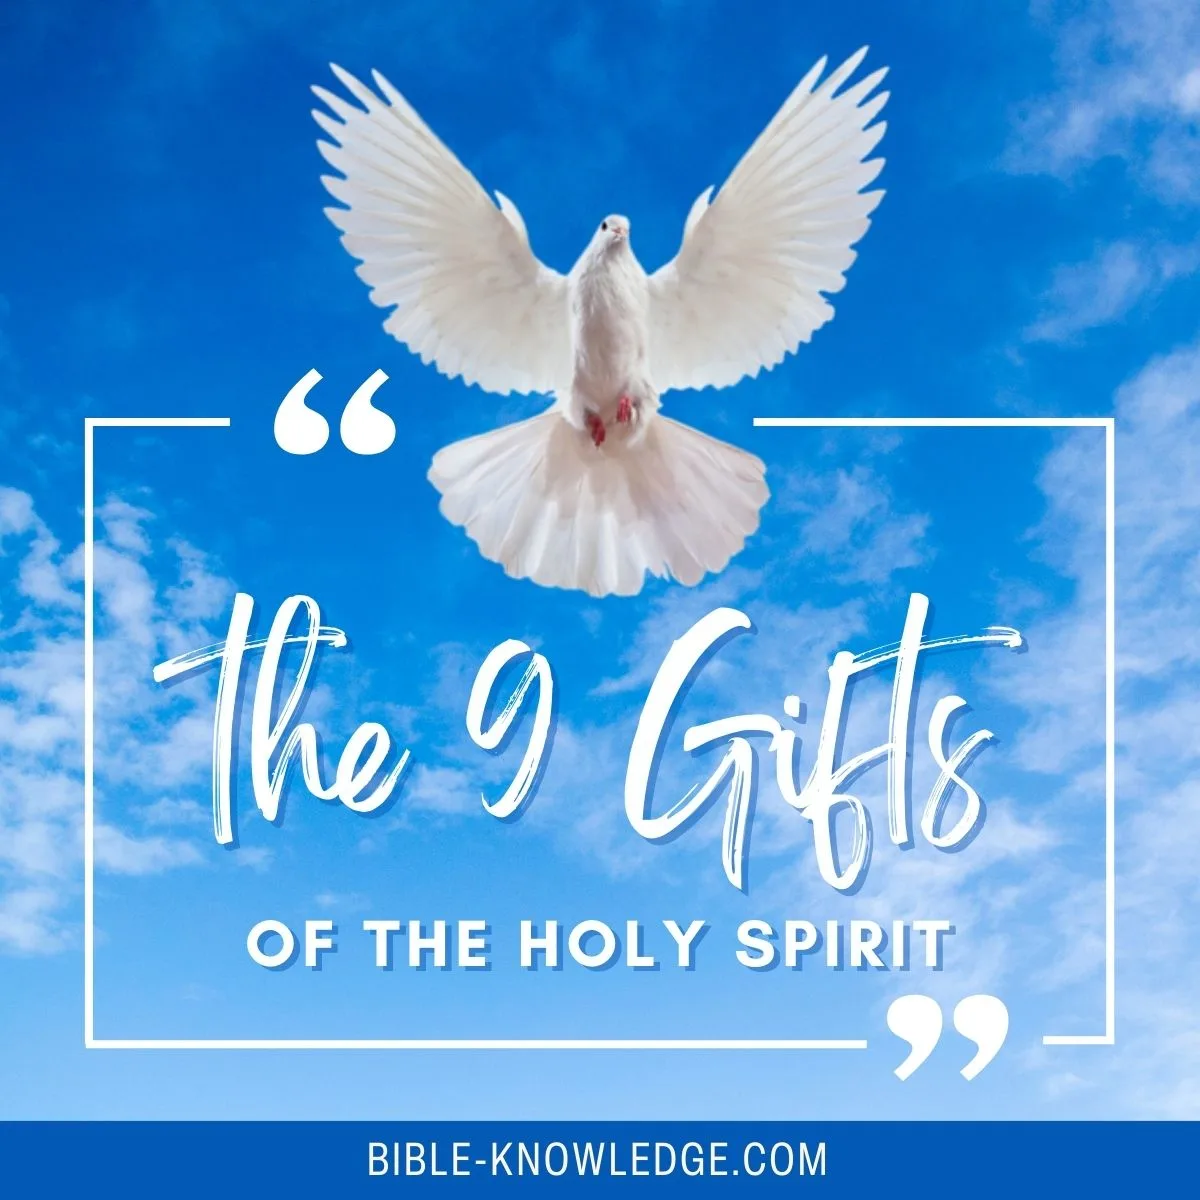 the holy spirit of god